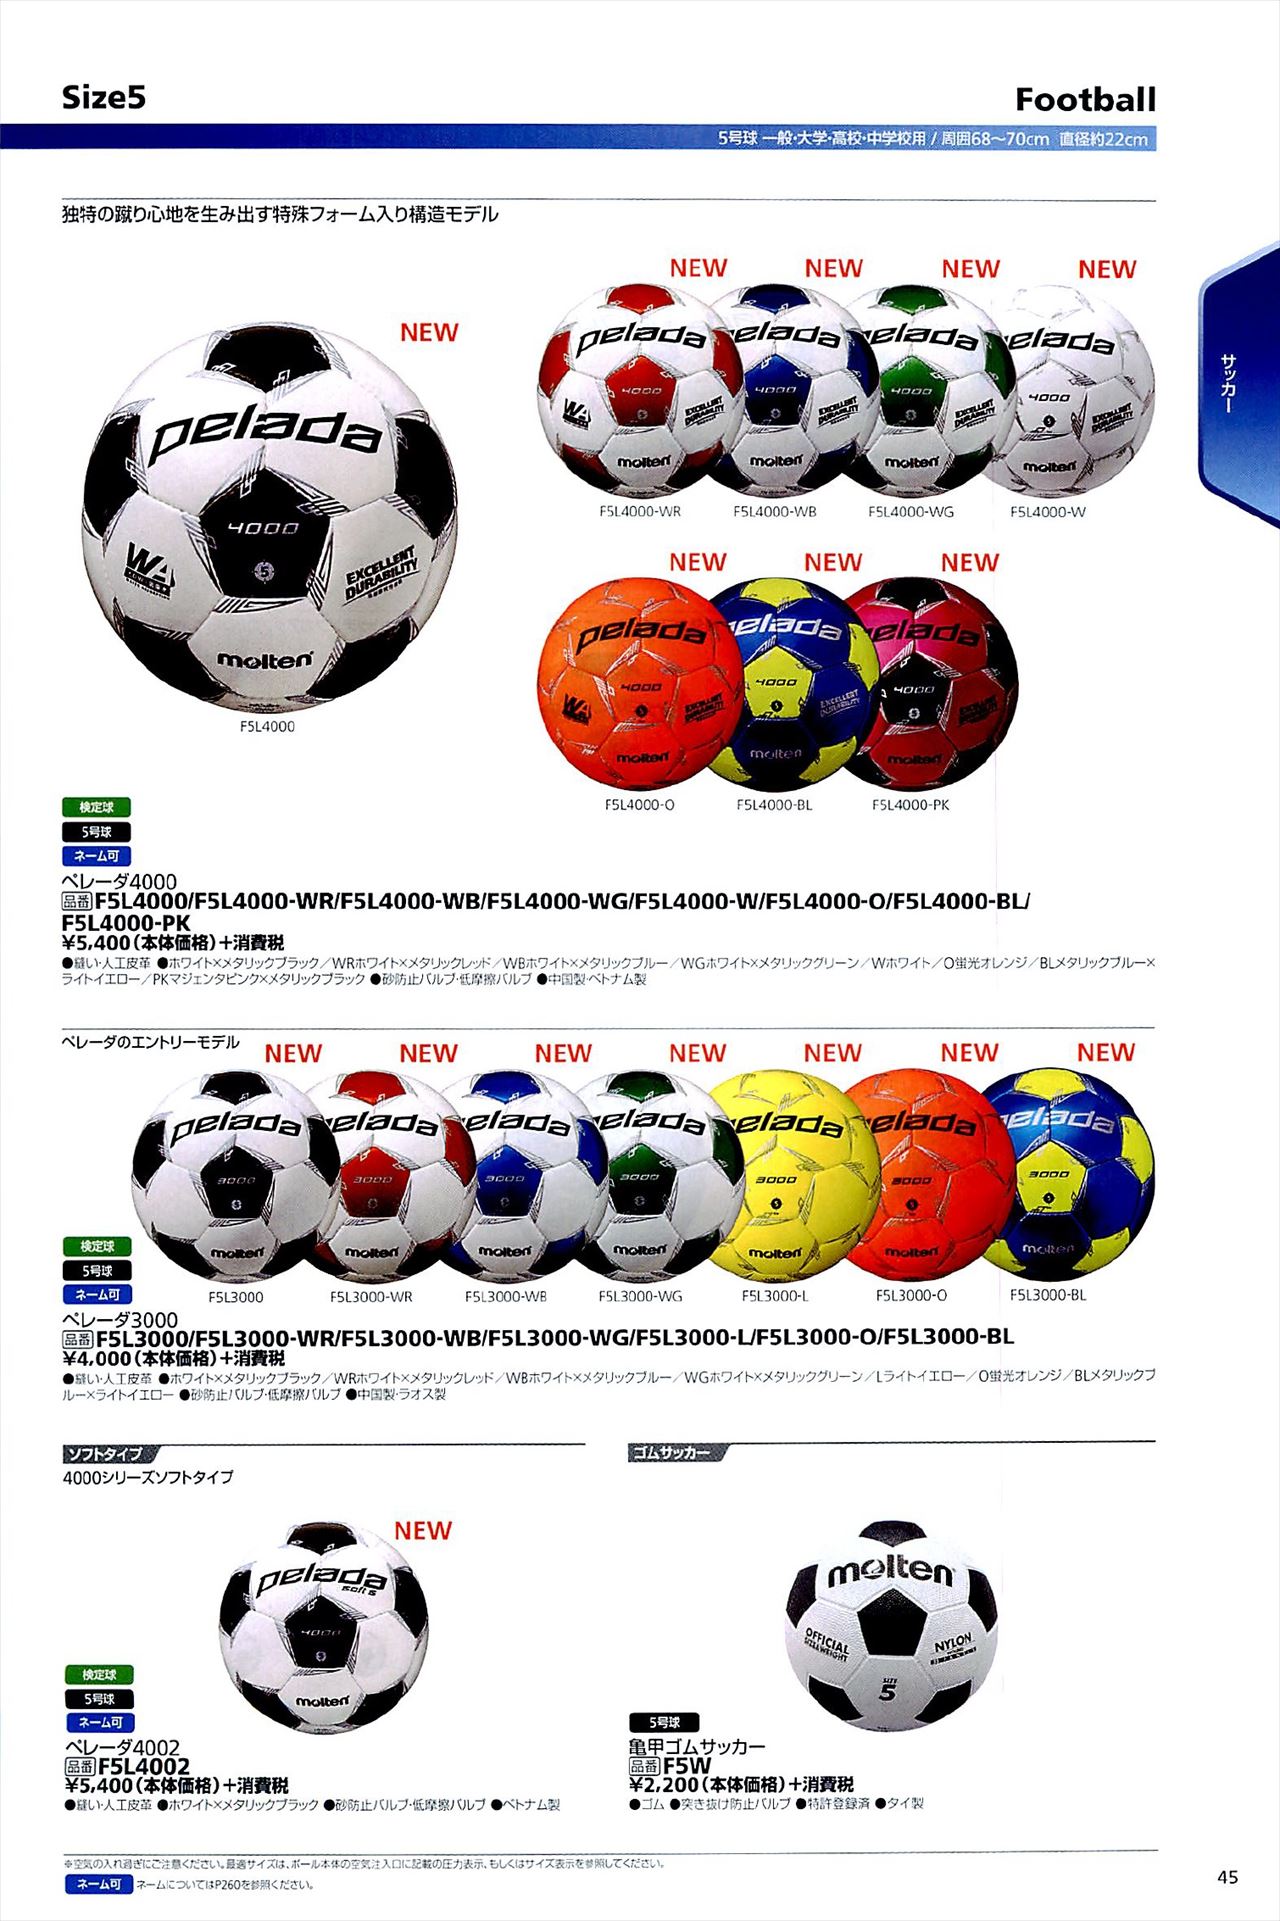 サッカーボール5号球は モルテンカタログ の ページ45 に掲載されています スポーツメーカーカタログ 目次ページ